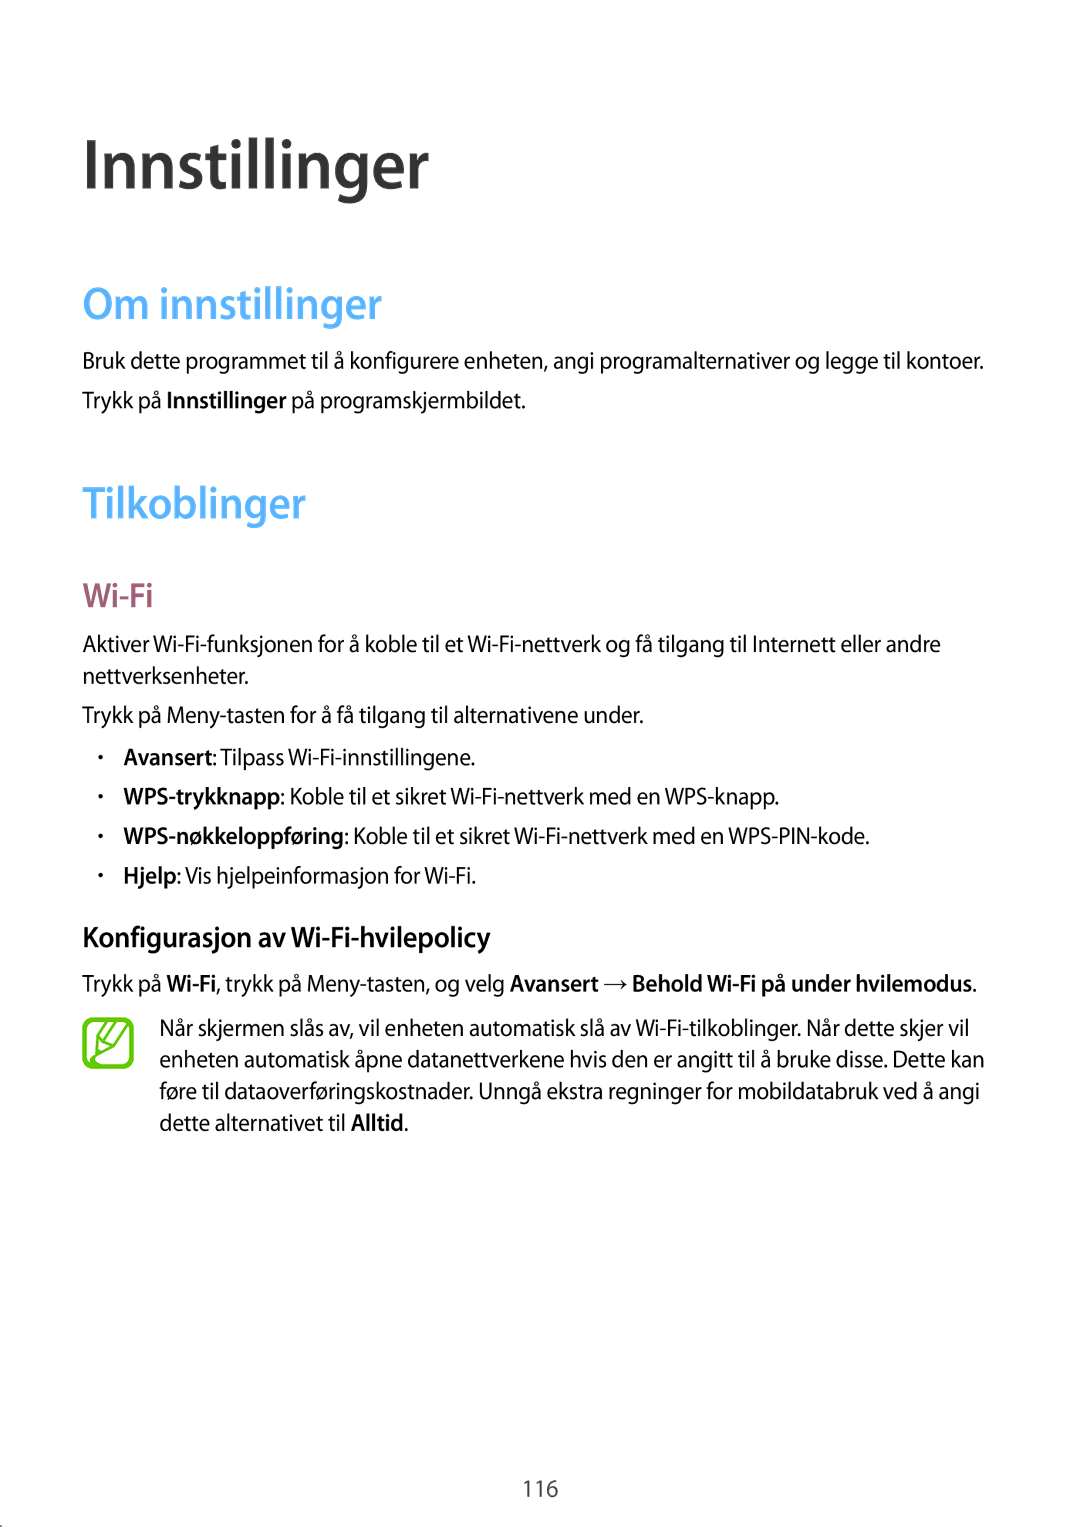 Samsung GT-I9295MOANEE manual Innstillinger, Om innstillinger, Tilkoblinger, Konfigurasjon av Wi-Fi-hvilepolicy 